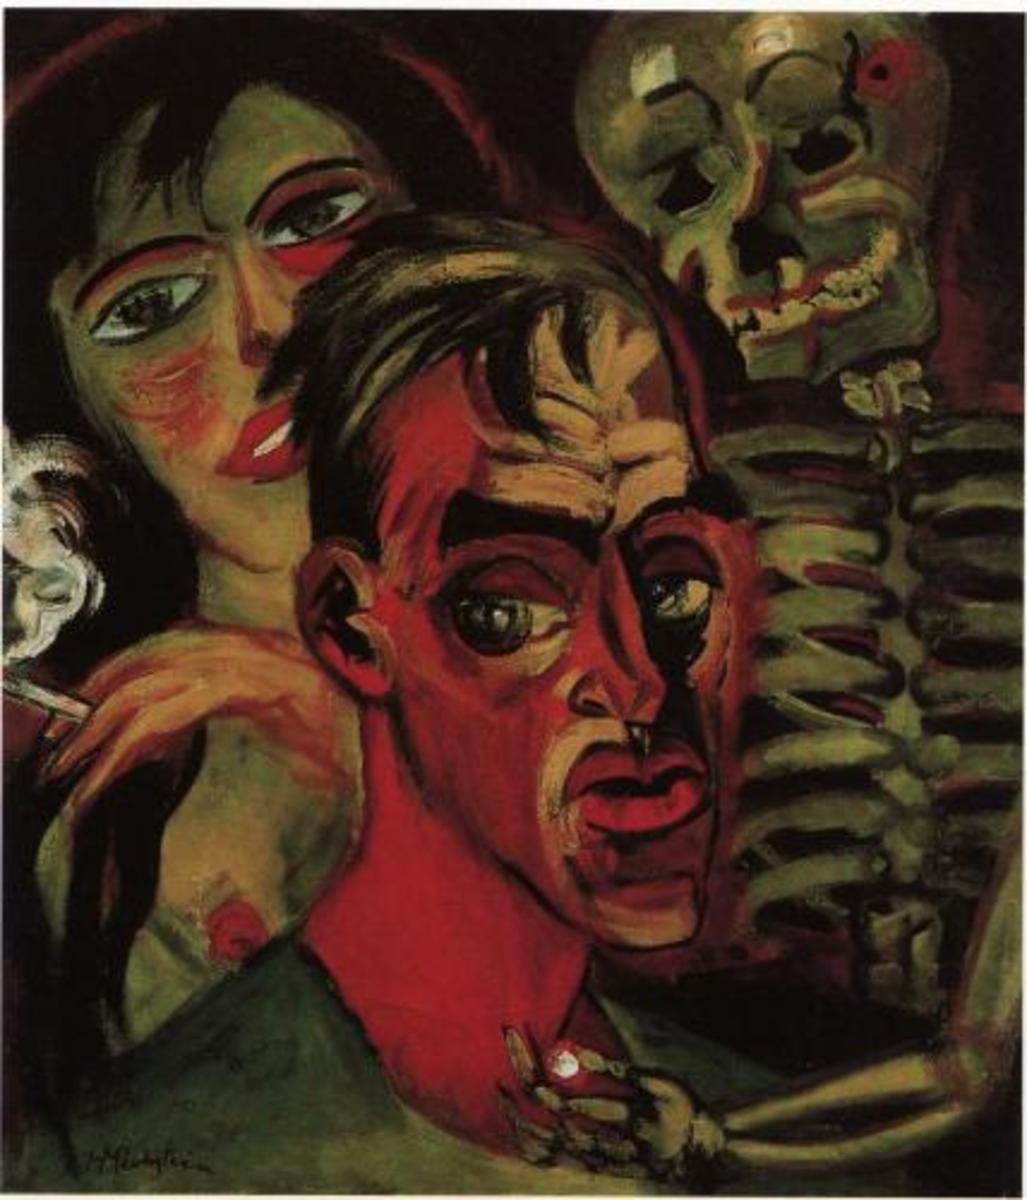 Hermann Max Pechstein, Self-Portrait with Death